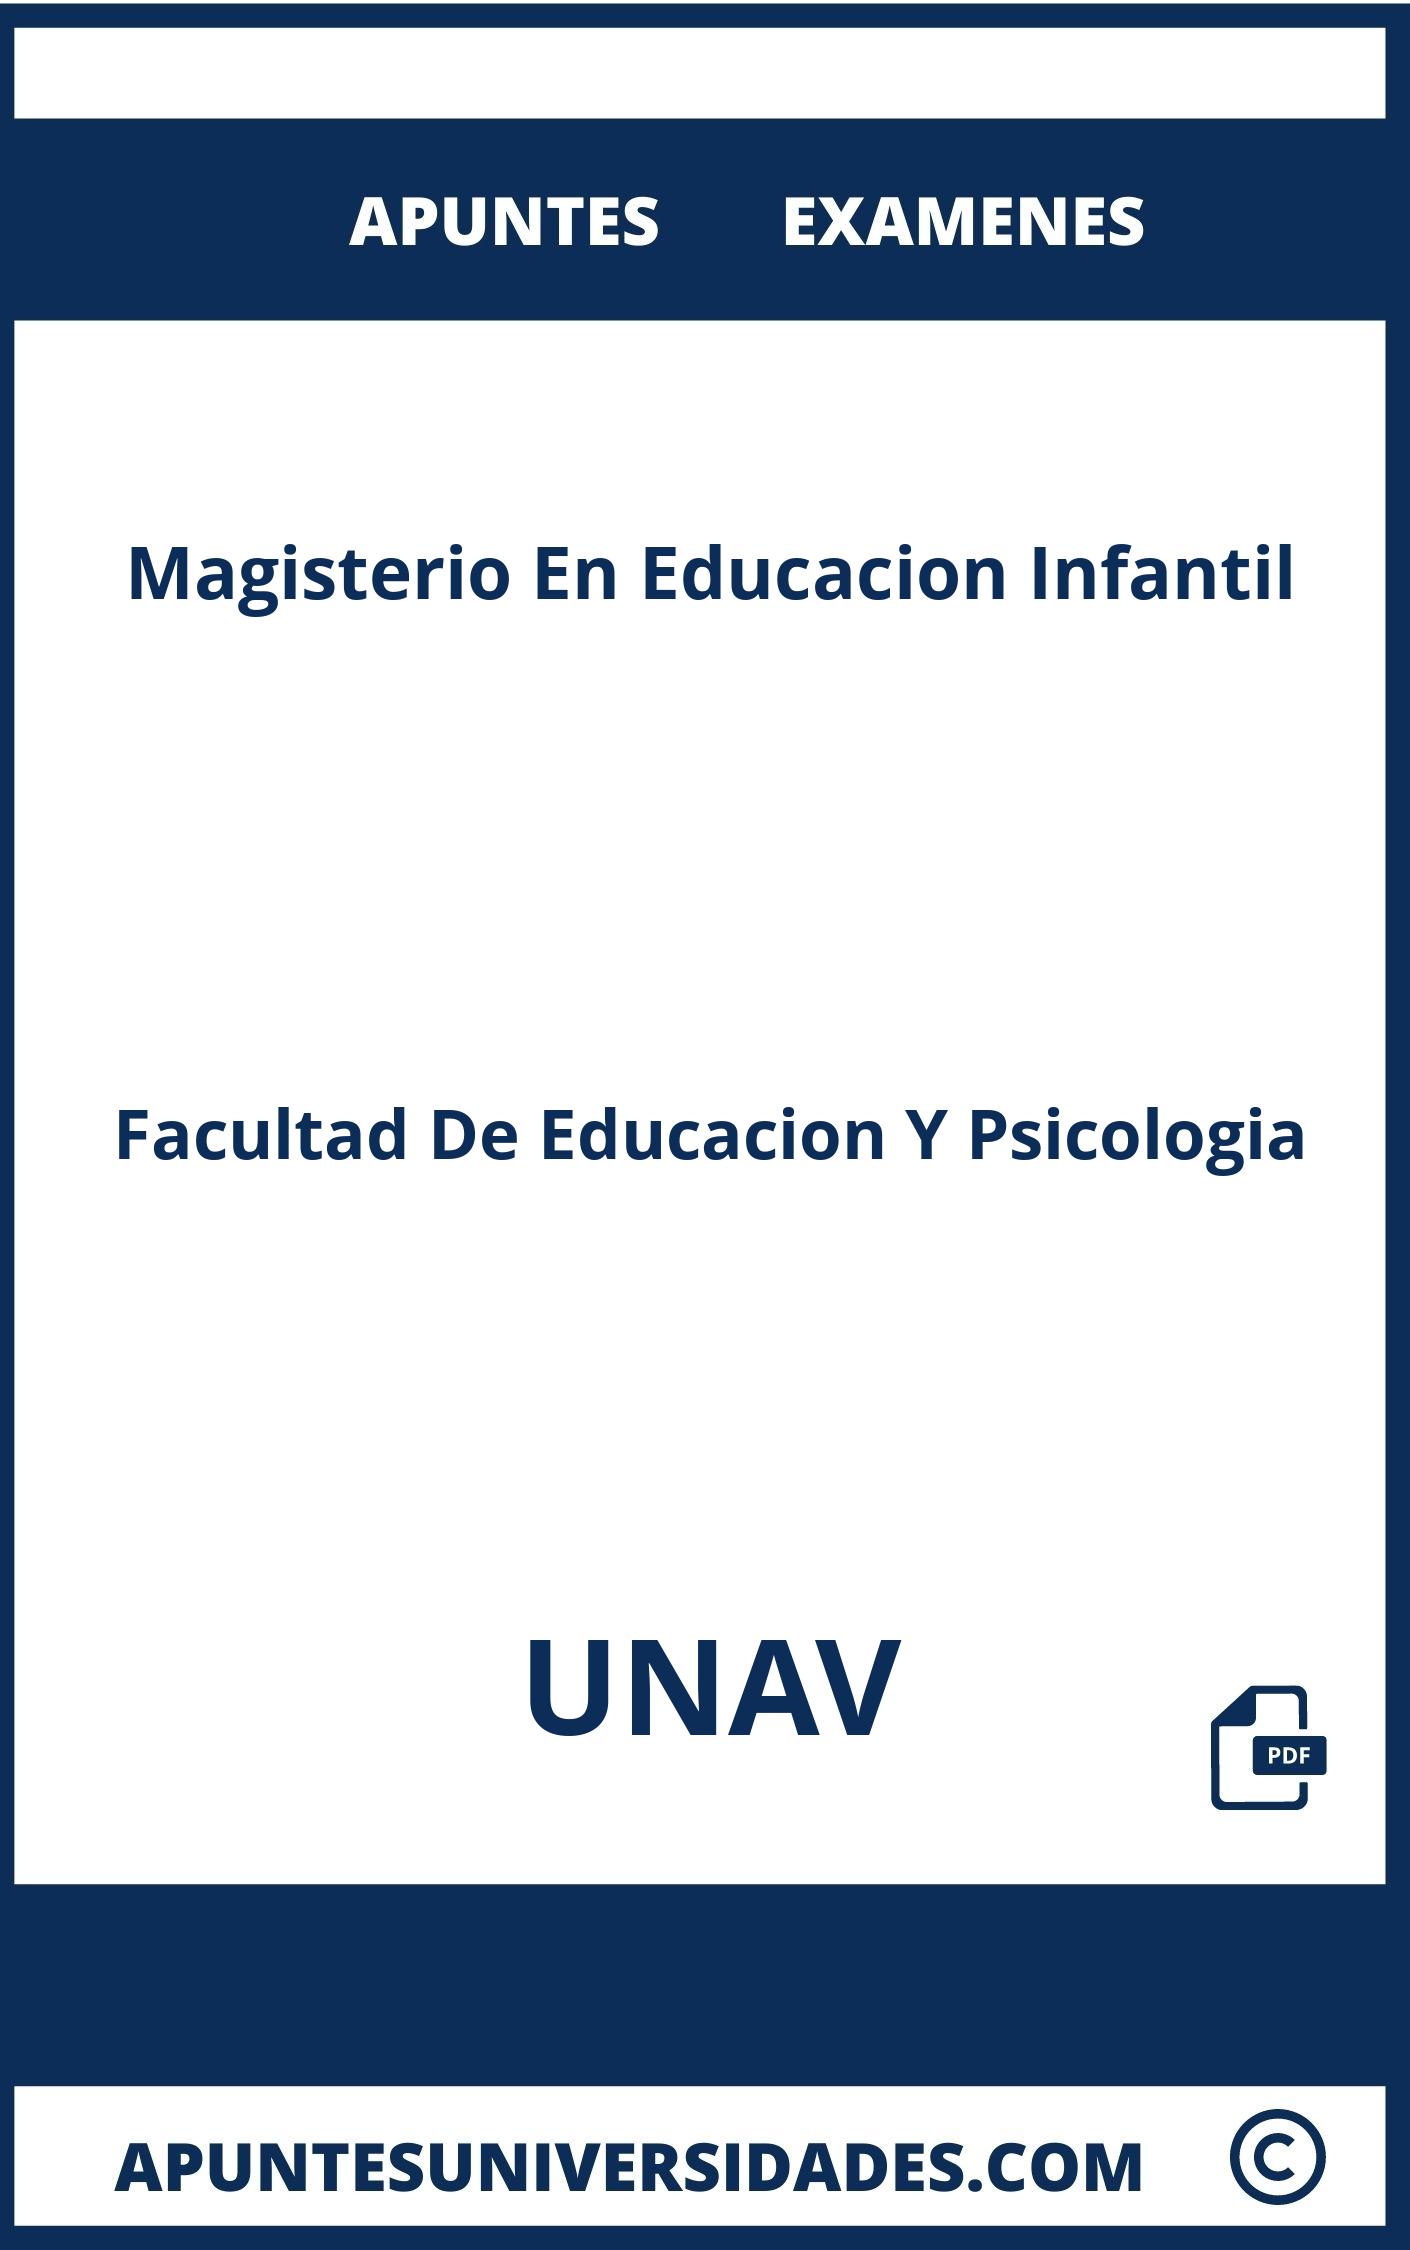 Apuntes Magisterio En Educacion Infantil UNAV y Examenes